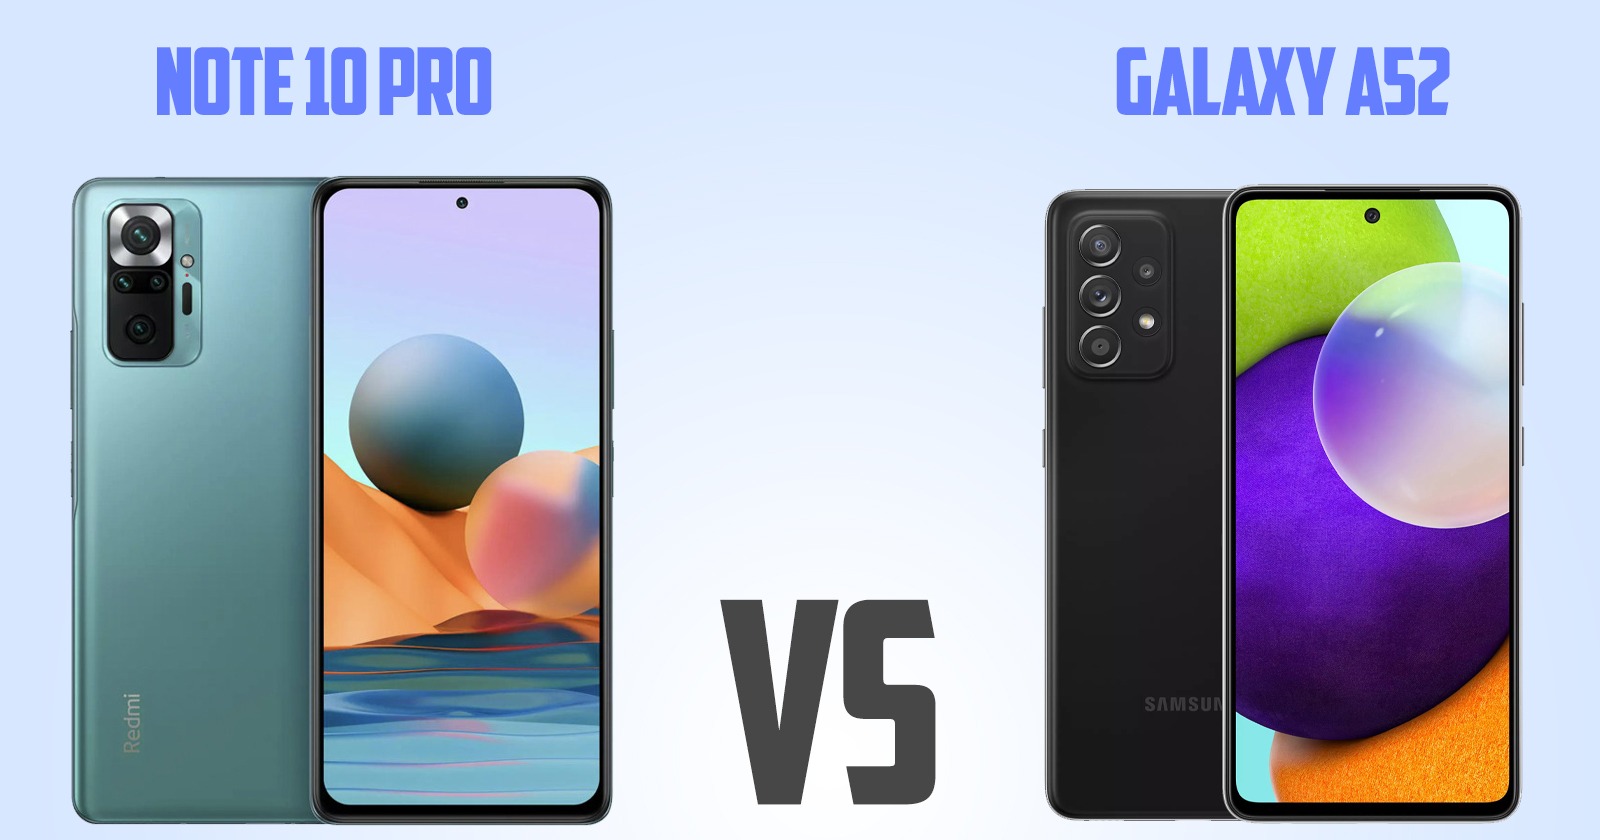 Samsung Galaxy A52 vs Redmi note 10 pro[ Full Comparison ]